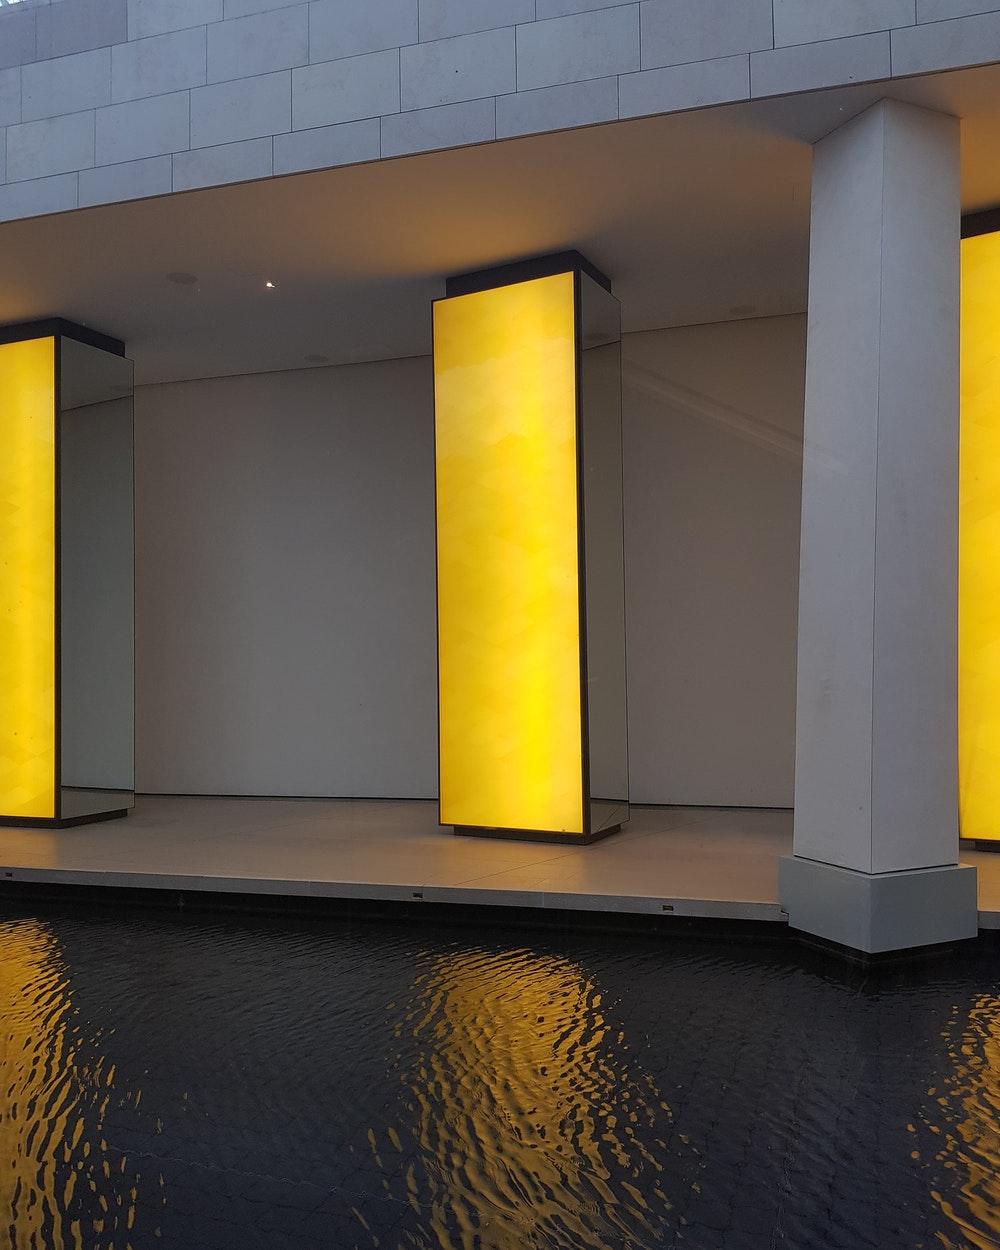 Louis Vuitton Foundation, Paris, France Picture. Download Free